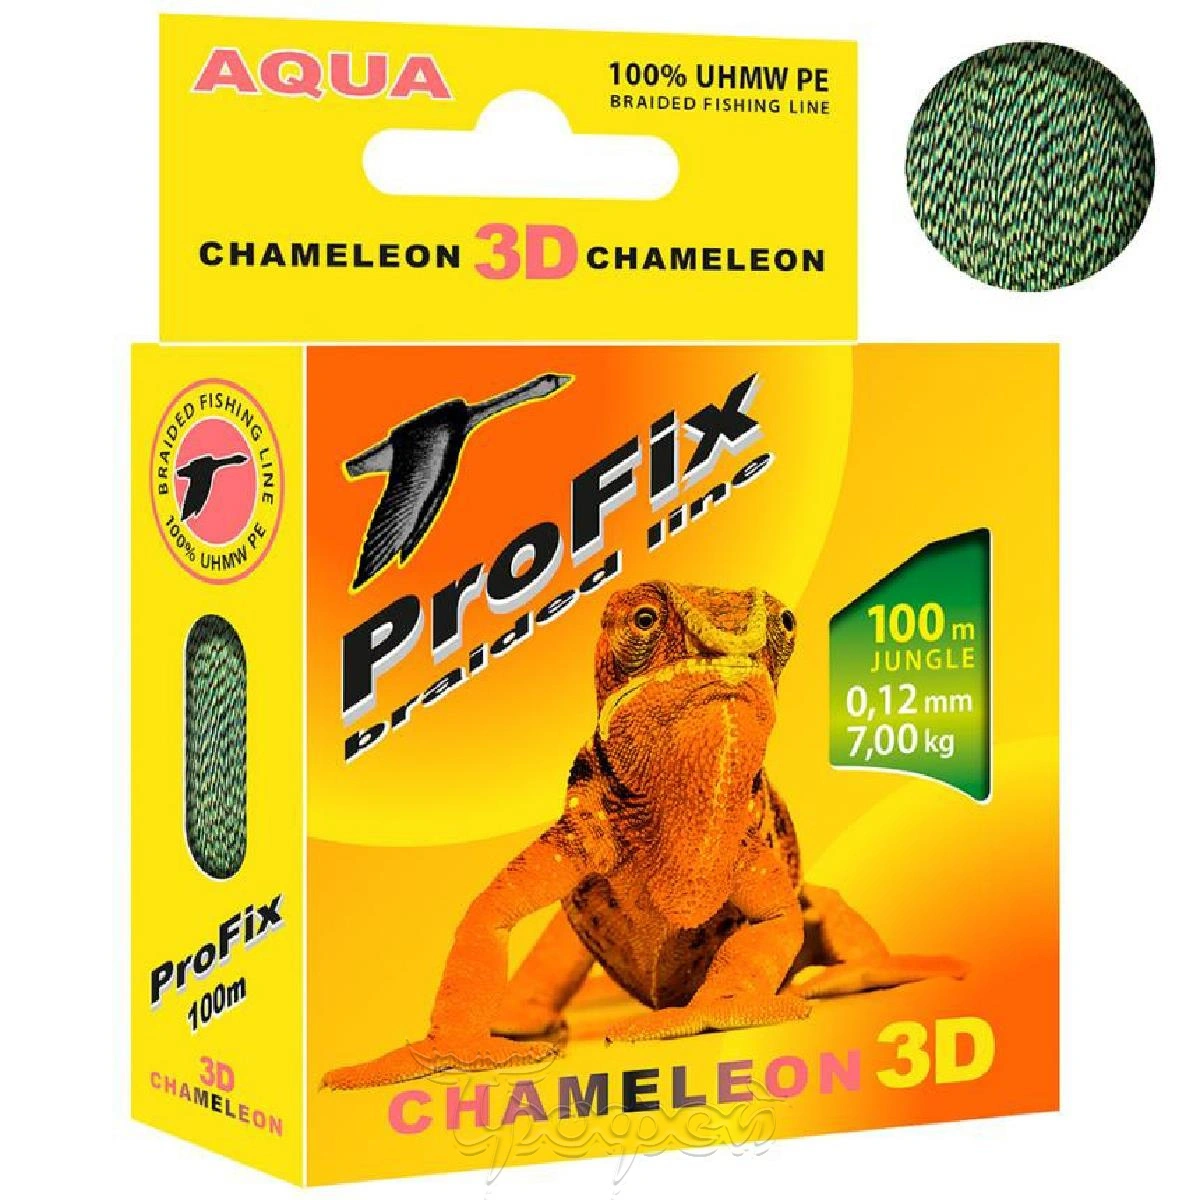 Хамелеон рыболовная. Шнур PROFIX Chameleon 3d 0.8. Аква леска плетеная Профикс. Леска Chameleon 3d spots. Леска Chameleon 3d spots 100 м.